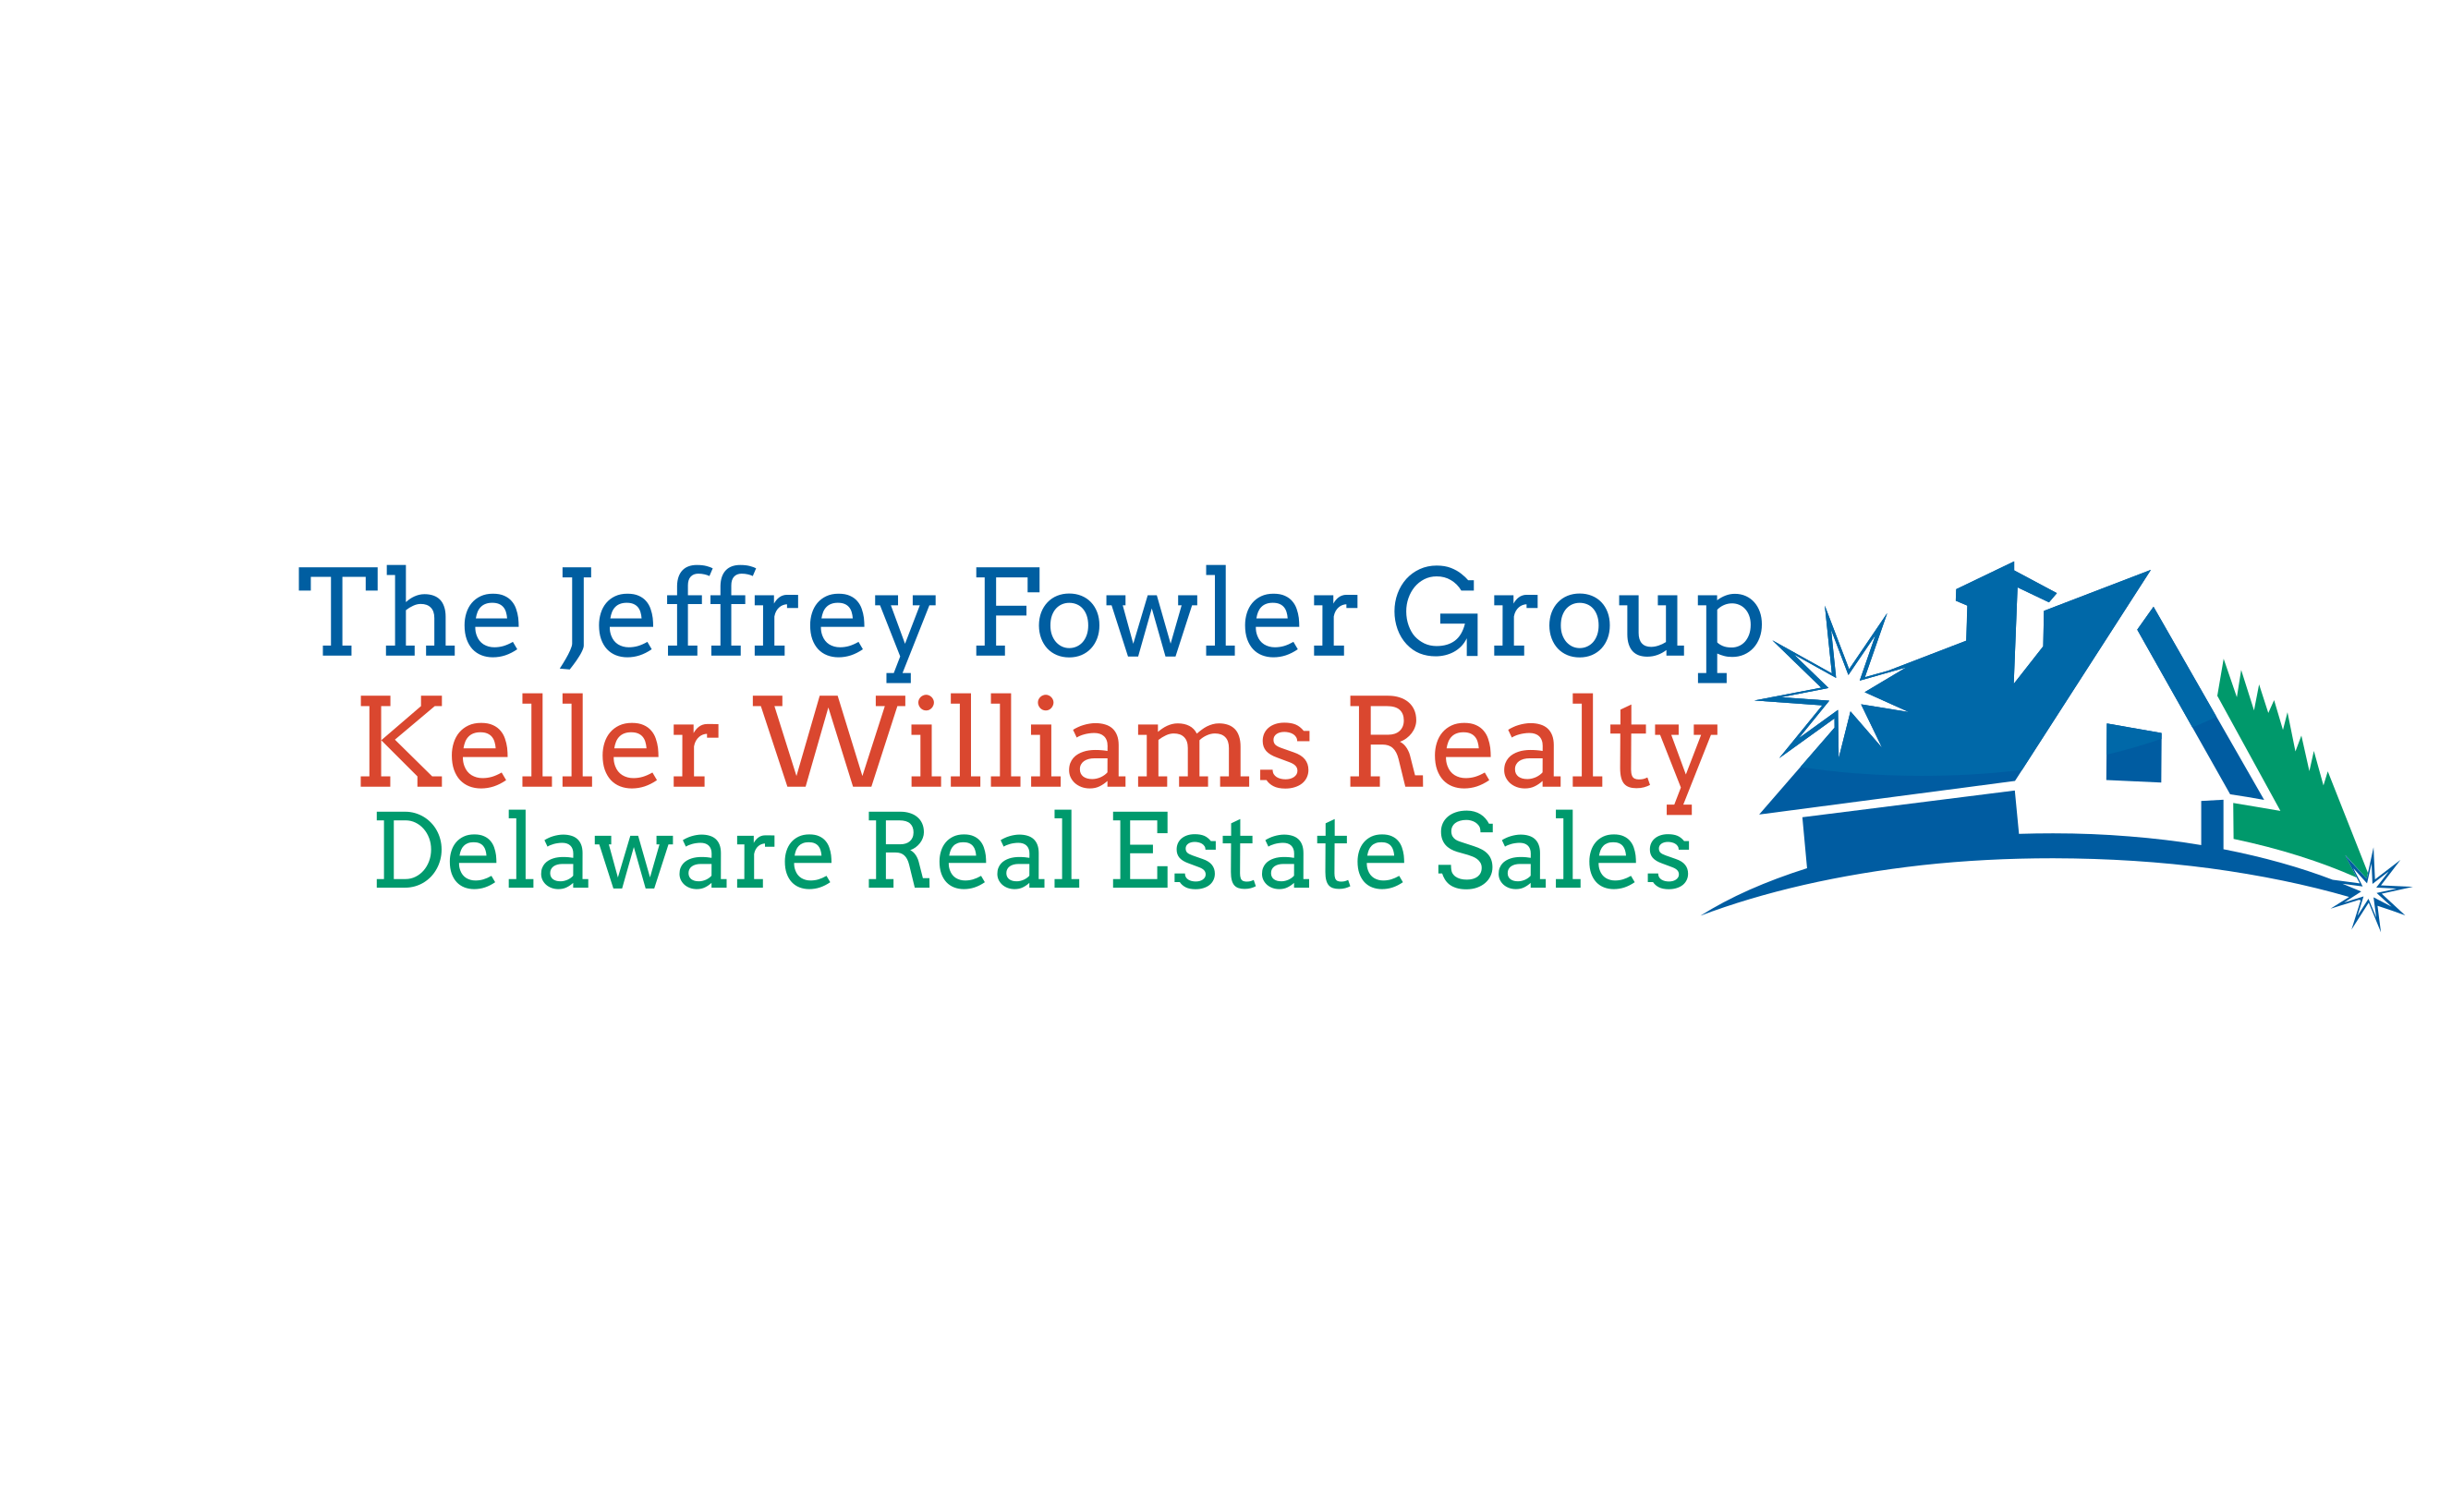 Jeffrey Fowler Group (JFG)